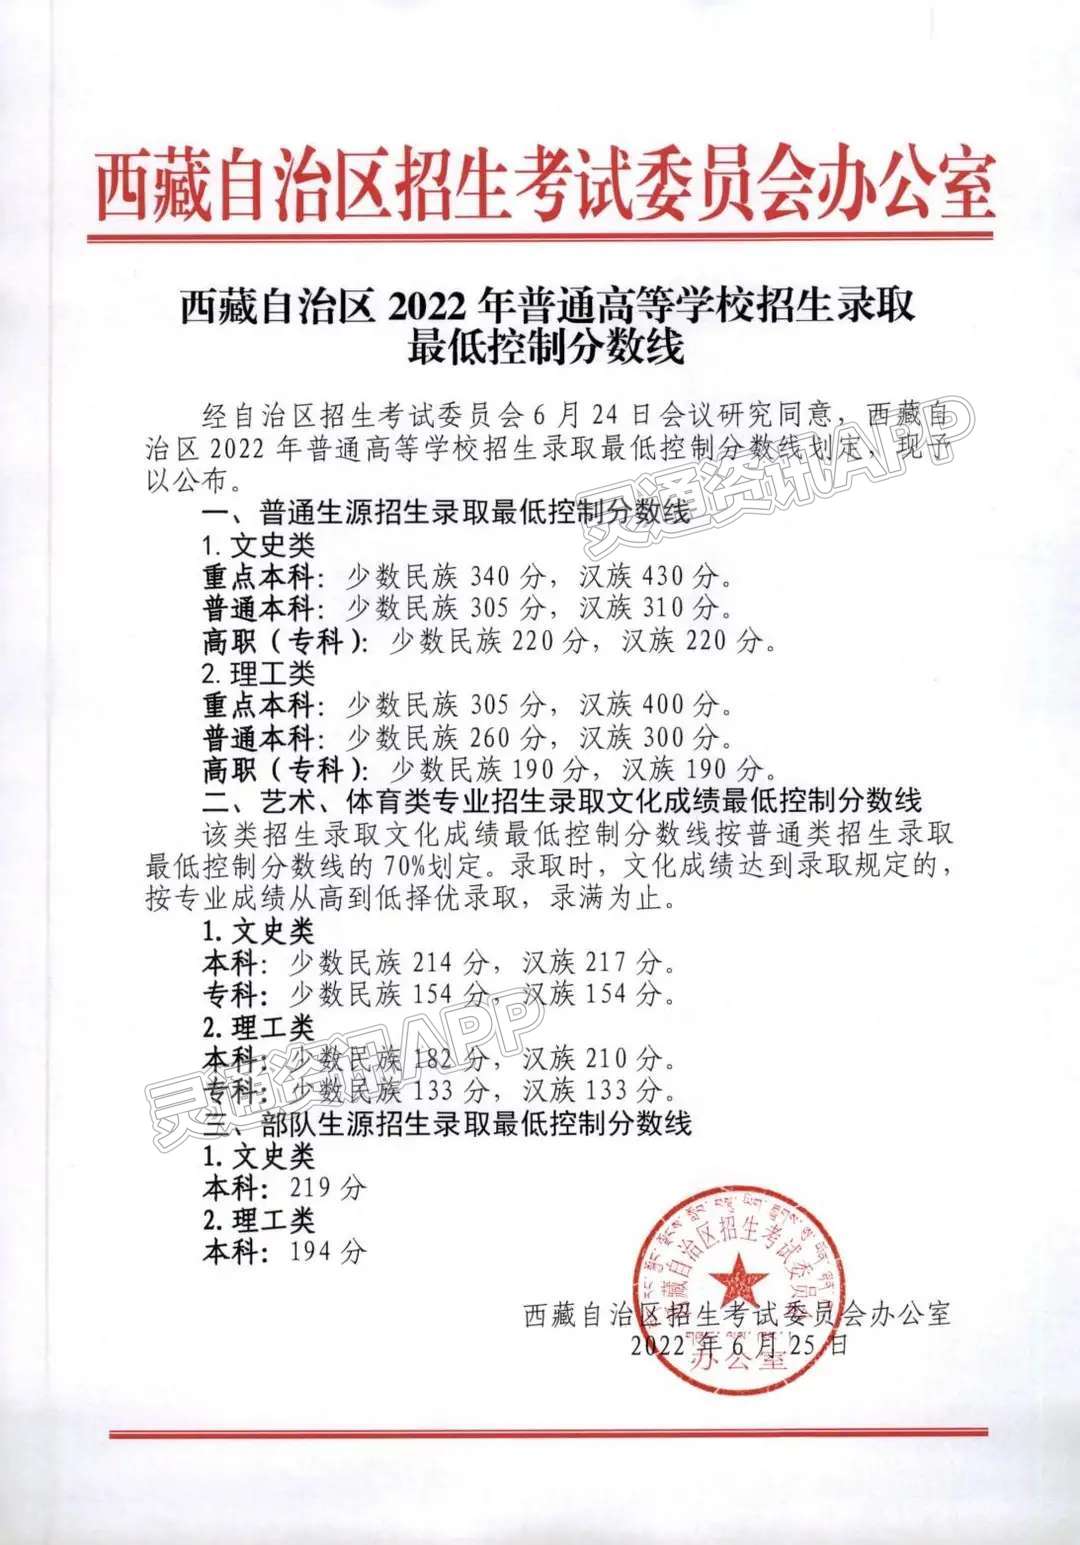 西藏2022年高考分数线公布“澳门威斯人官方网站登录”